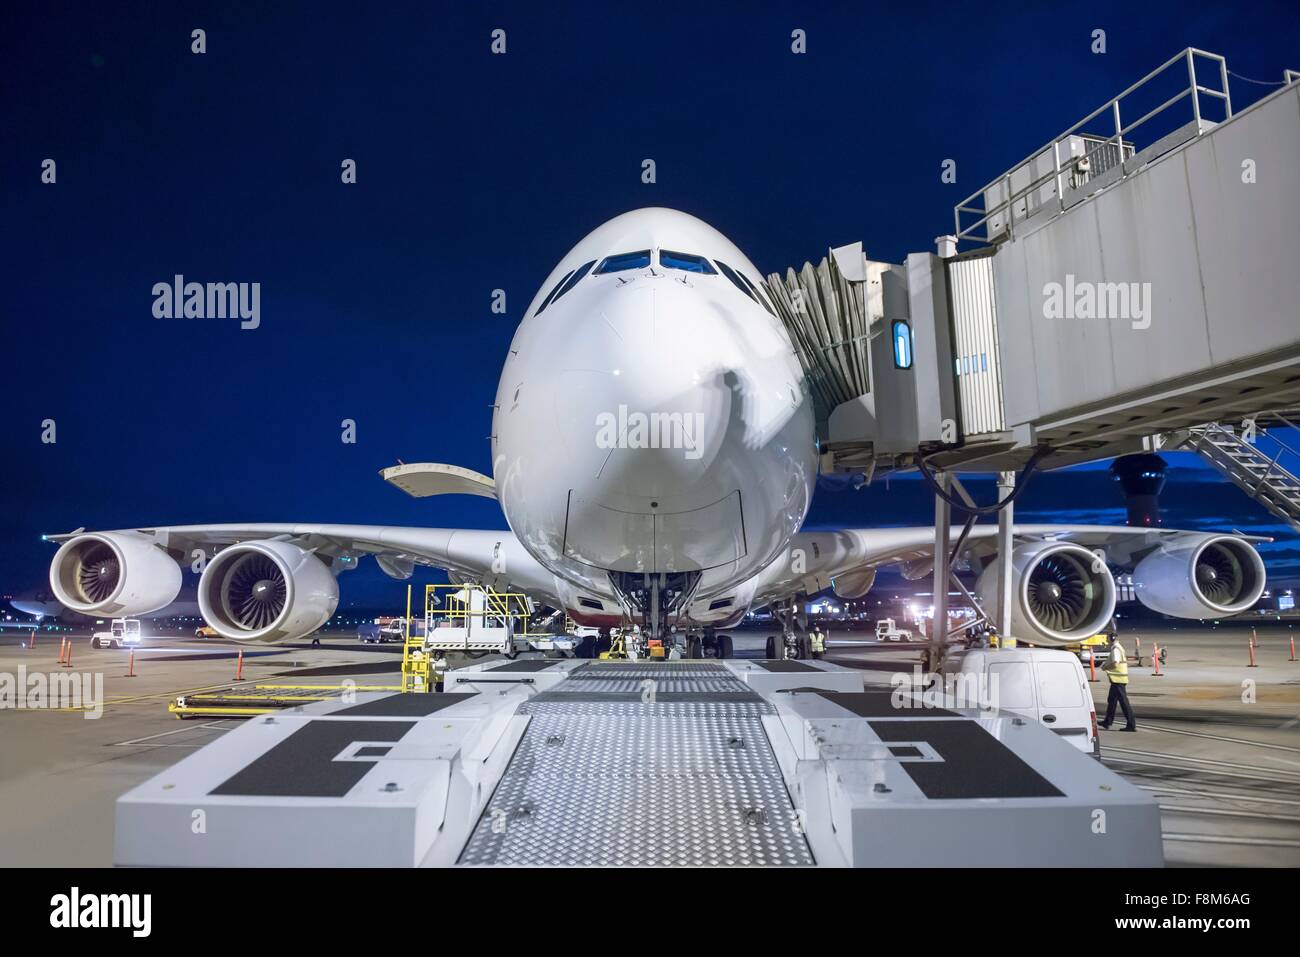 Ingeniero jefe de inspección de aviones A380 en la pista durante la noche Foto de stock